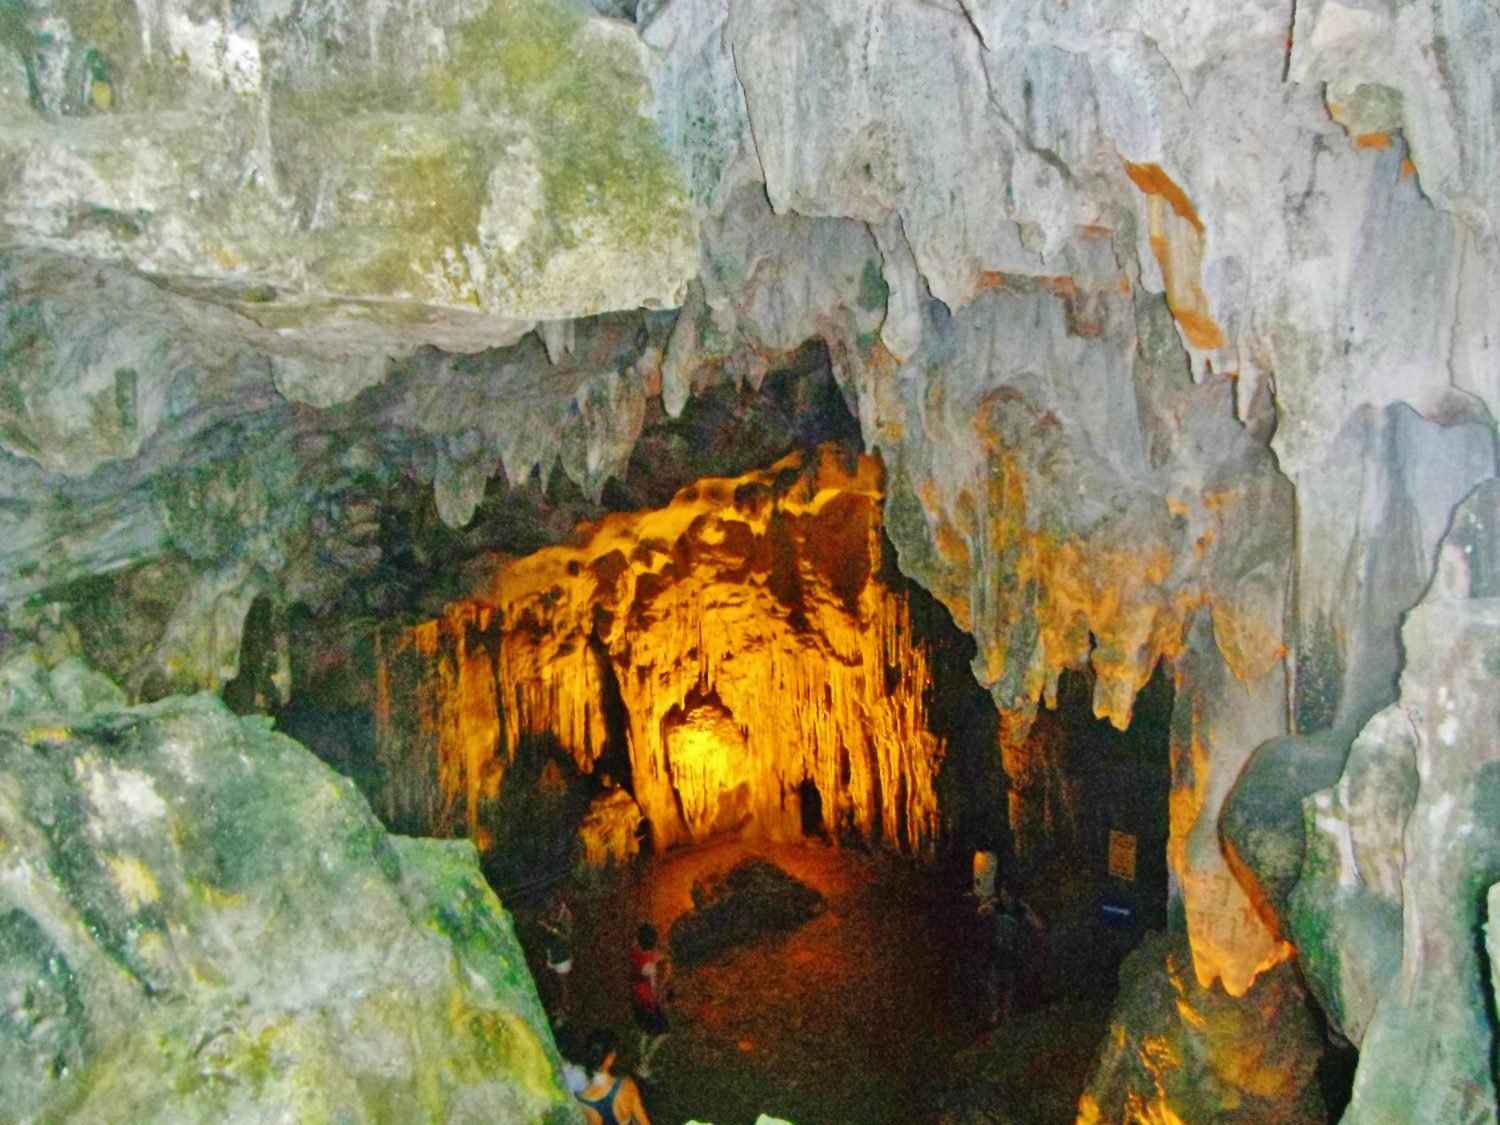 halong bay cave